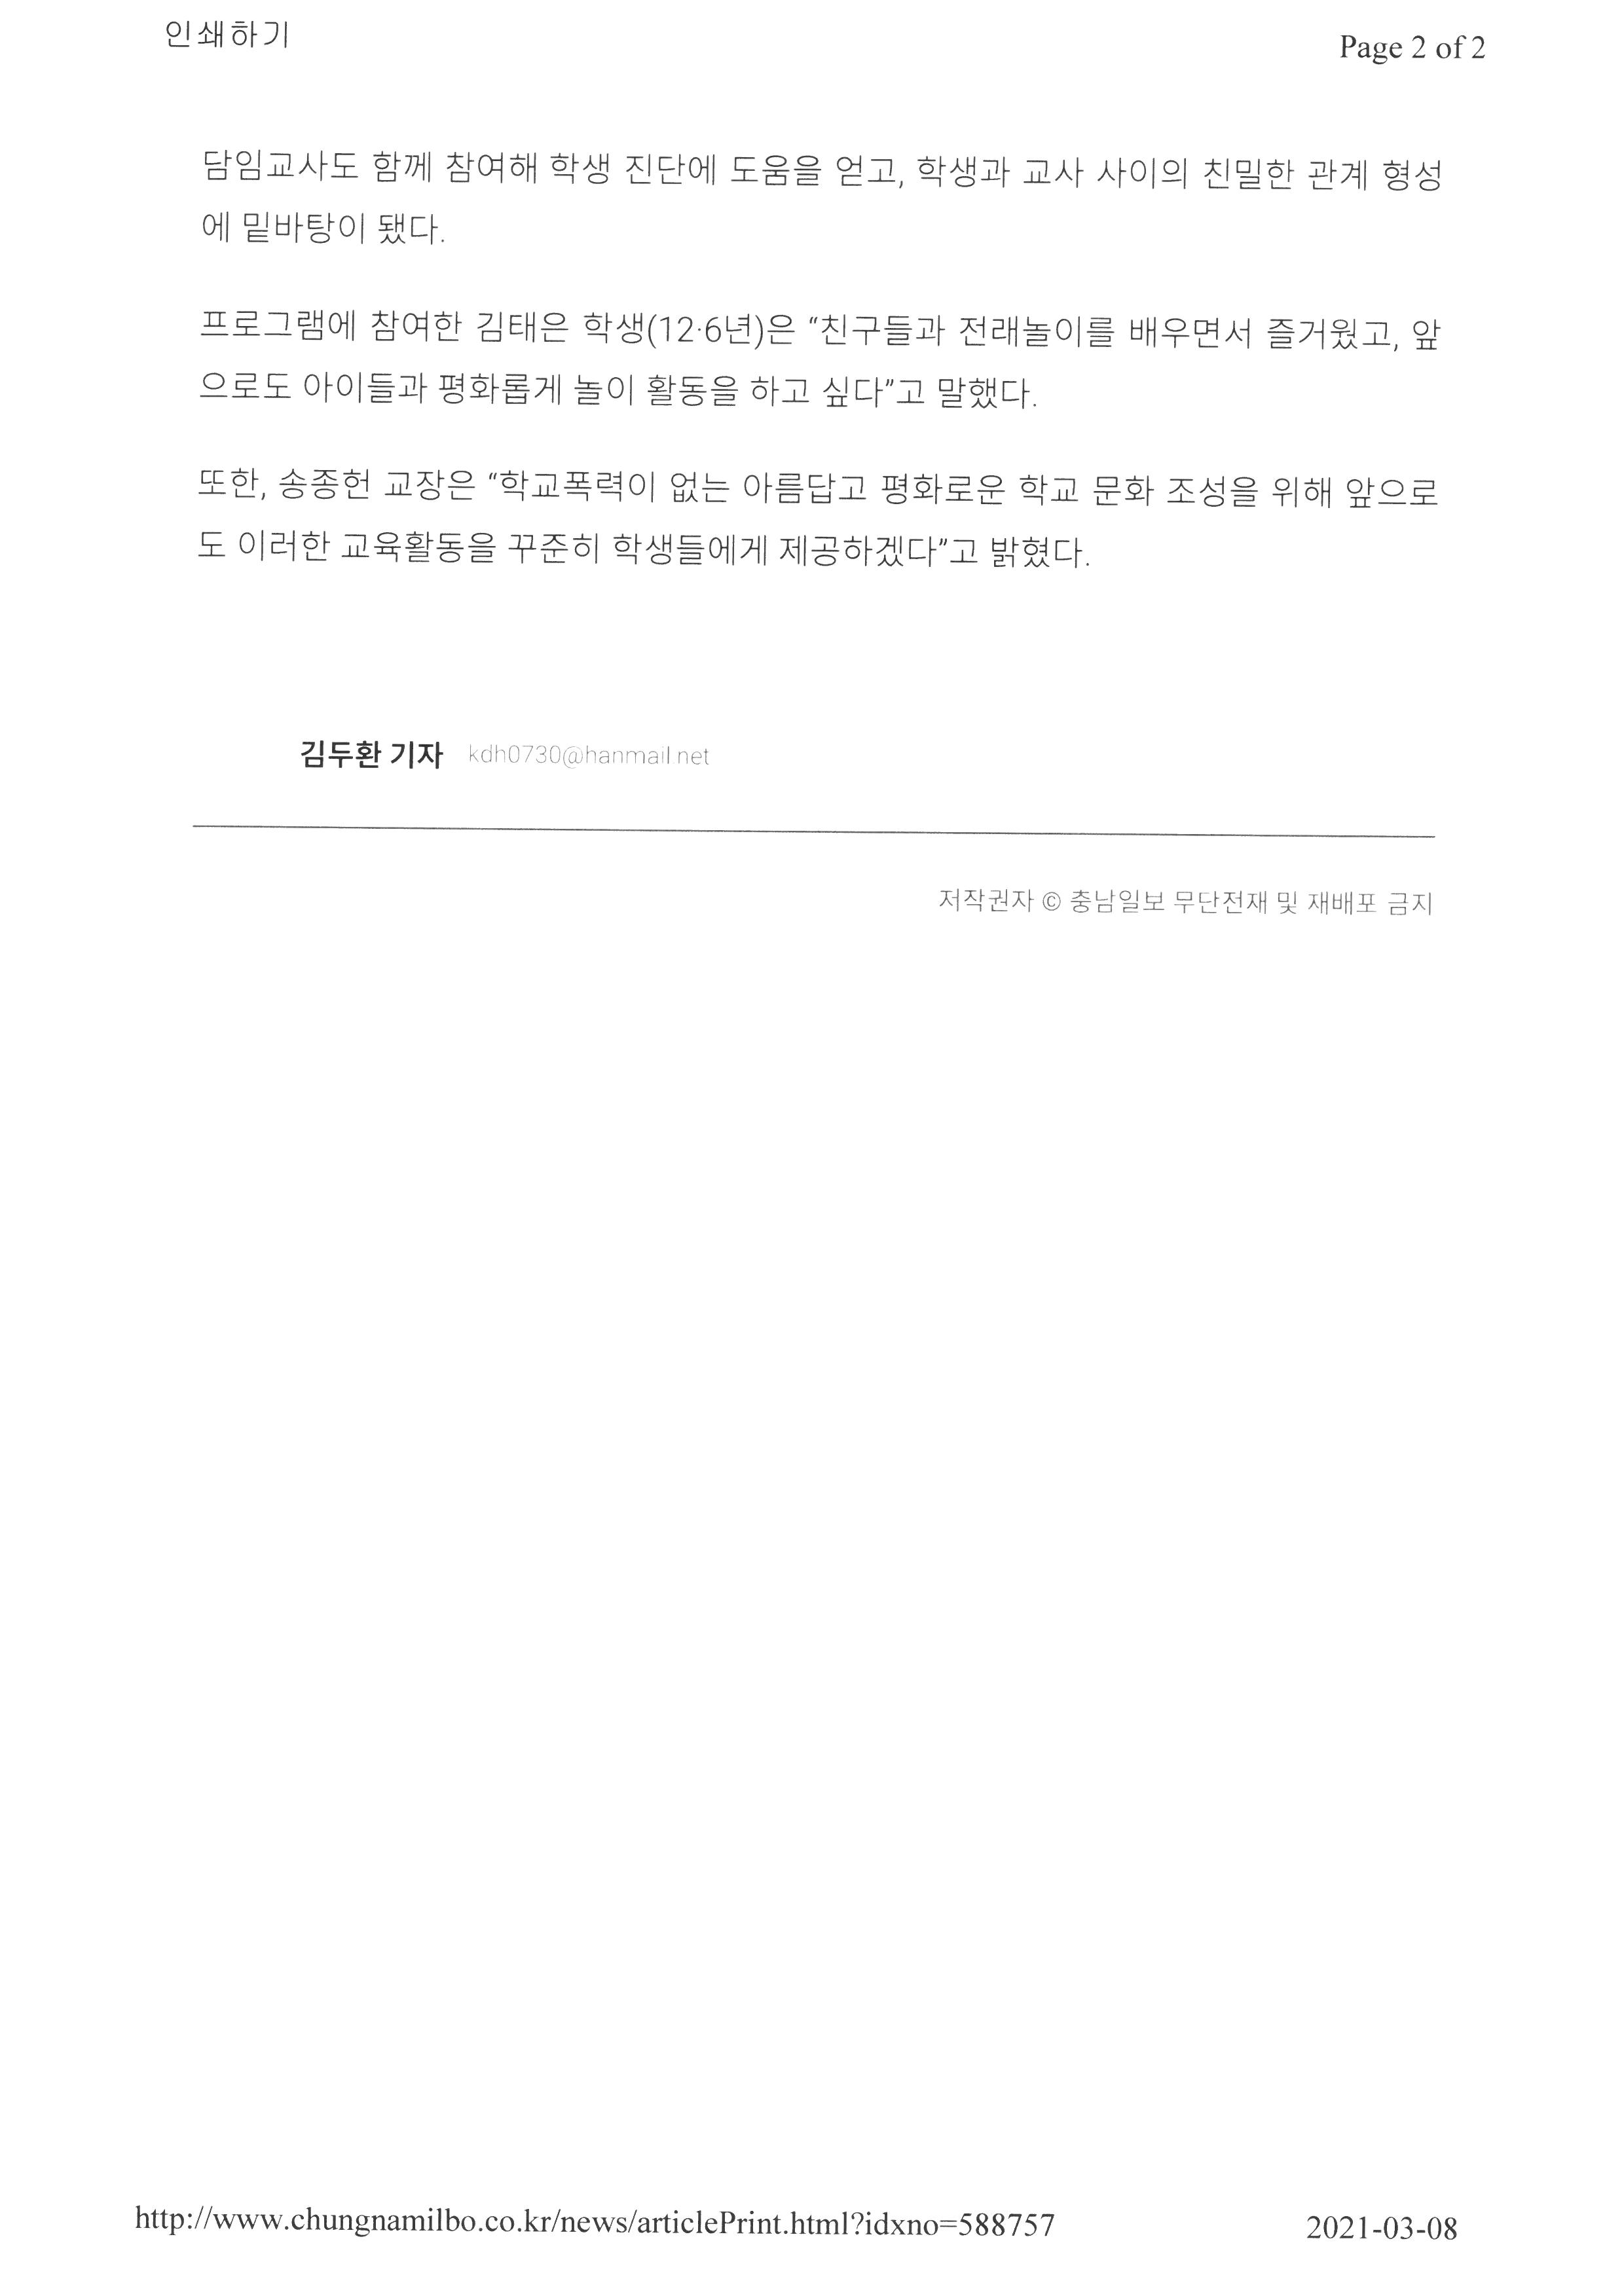 충남일보-인성캠프 (2)